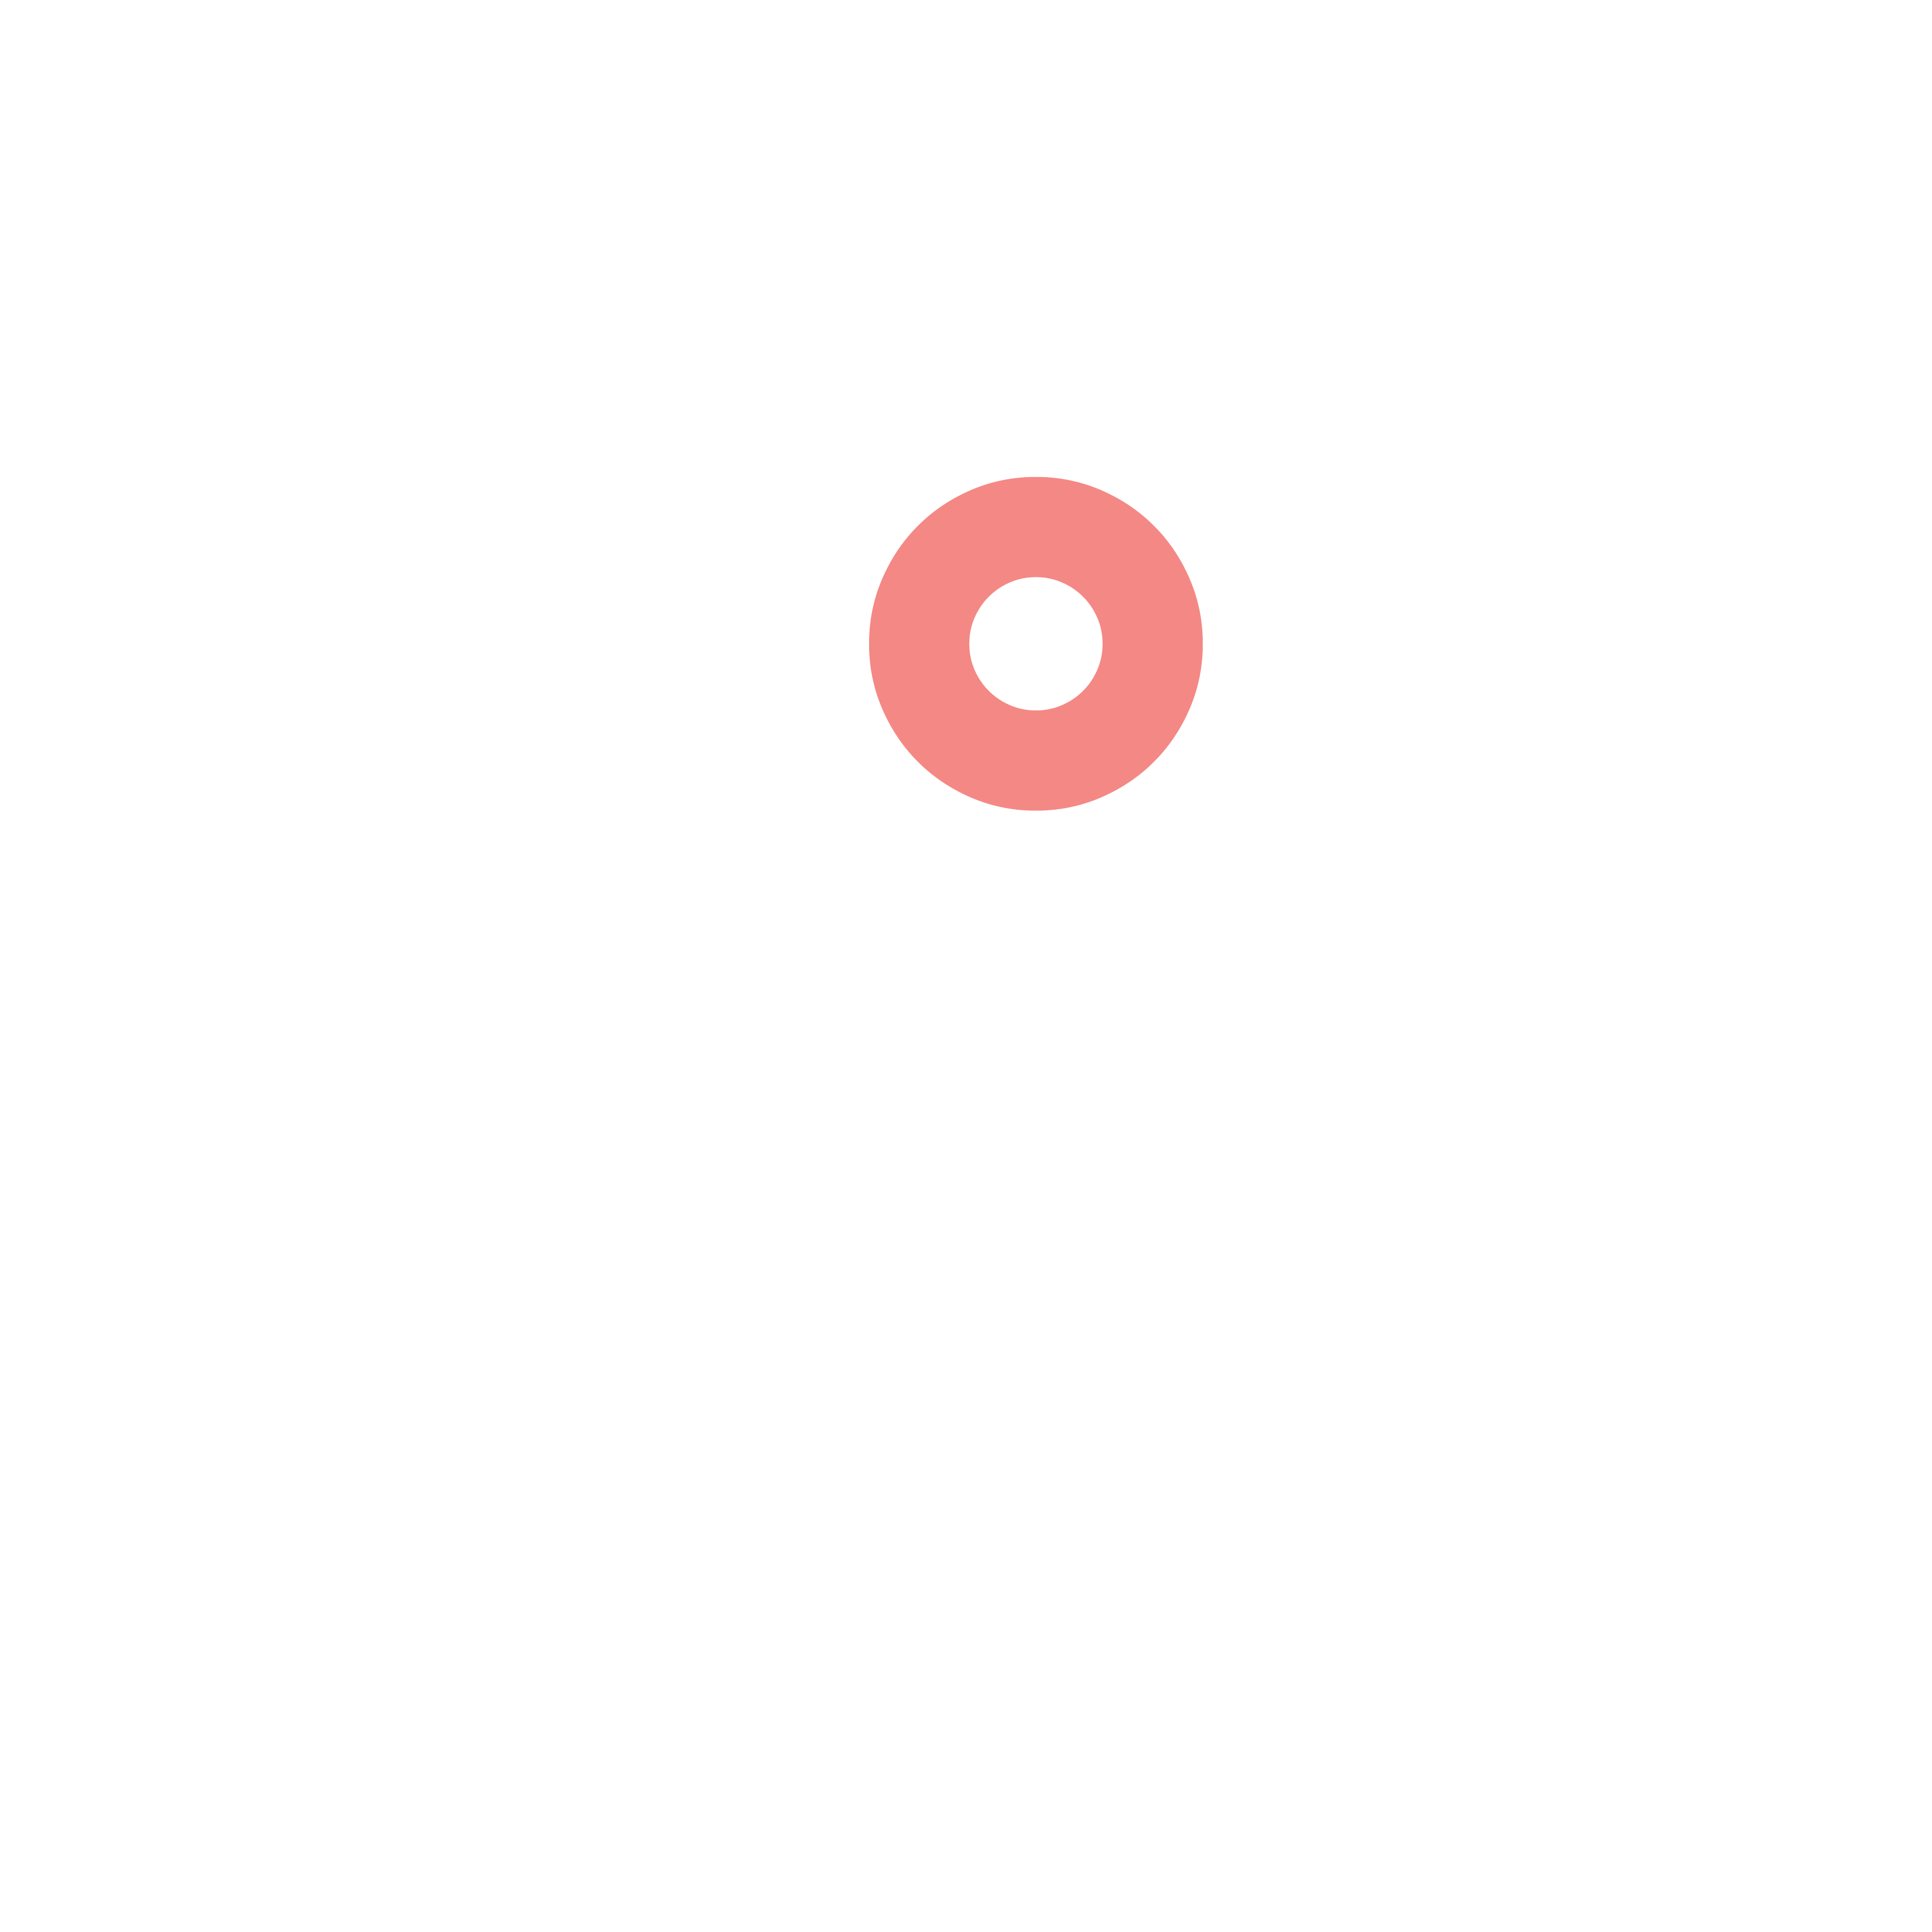 Folk Army